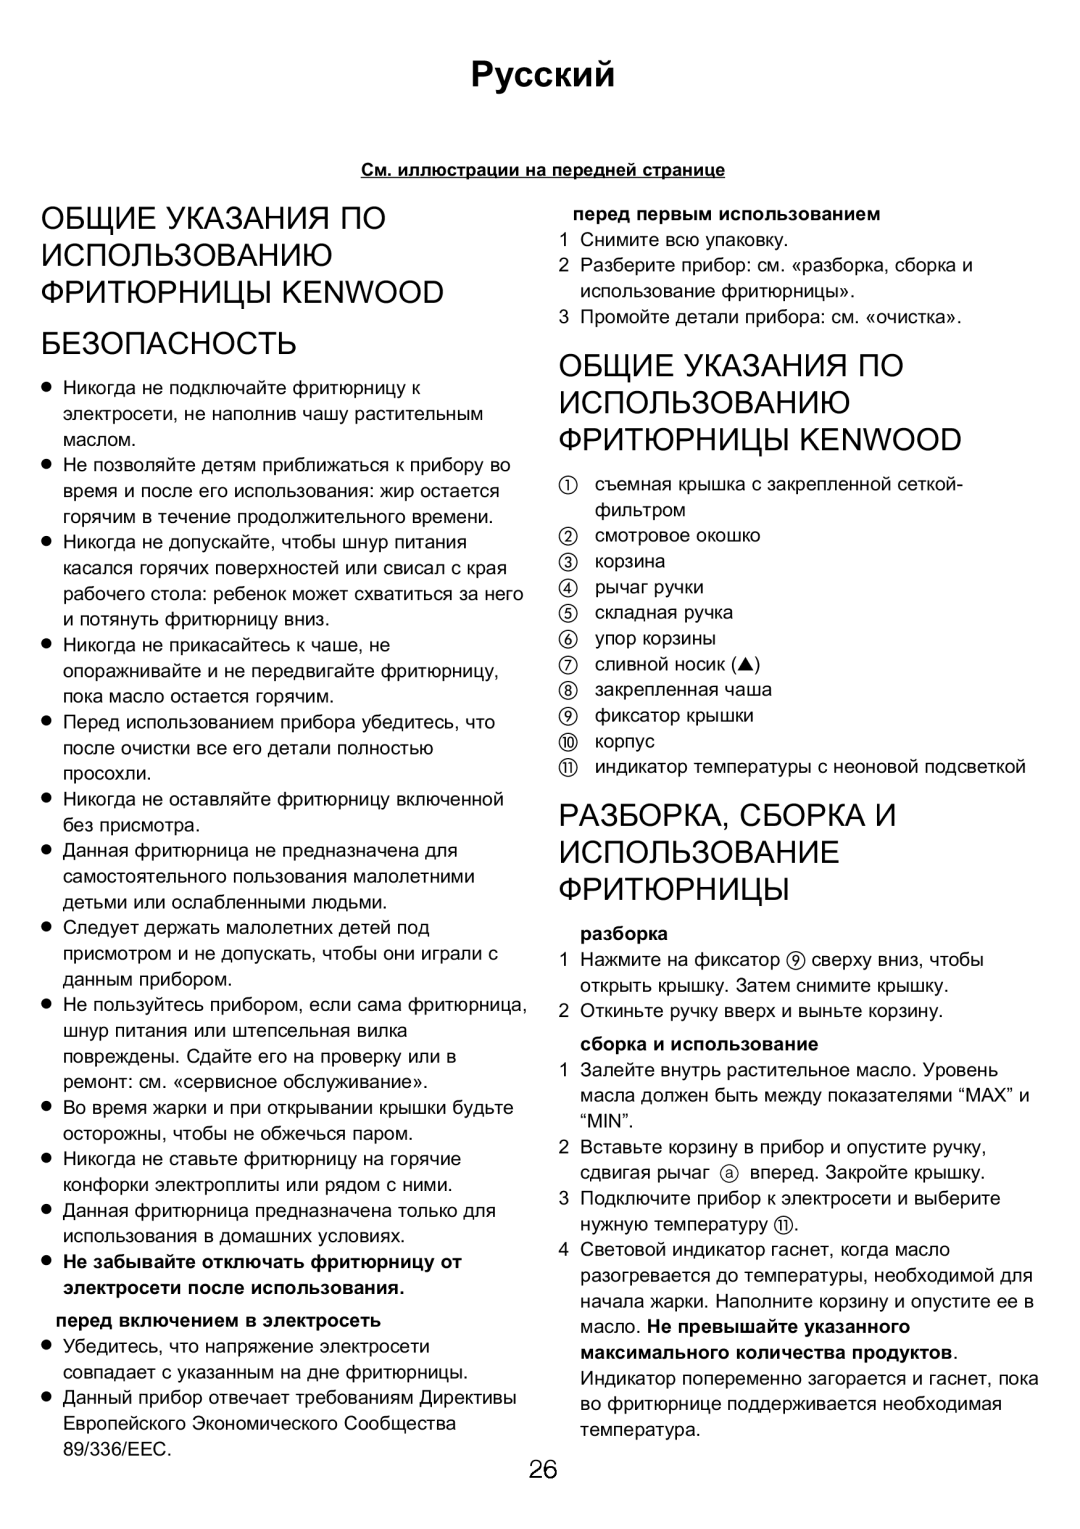 Kenwood DEEP FRYER Русский, Общие Указания По Использованию Фритюрницы Kenwood Безопасность, перед первым использованием 